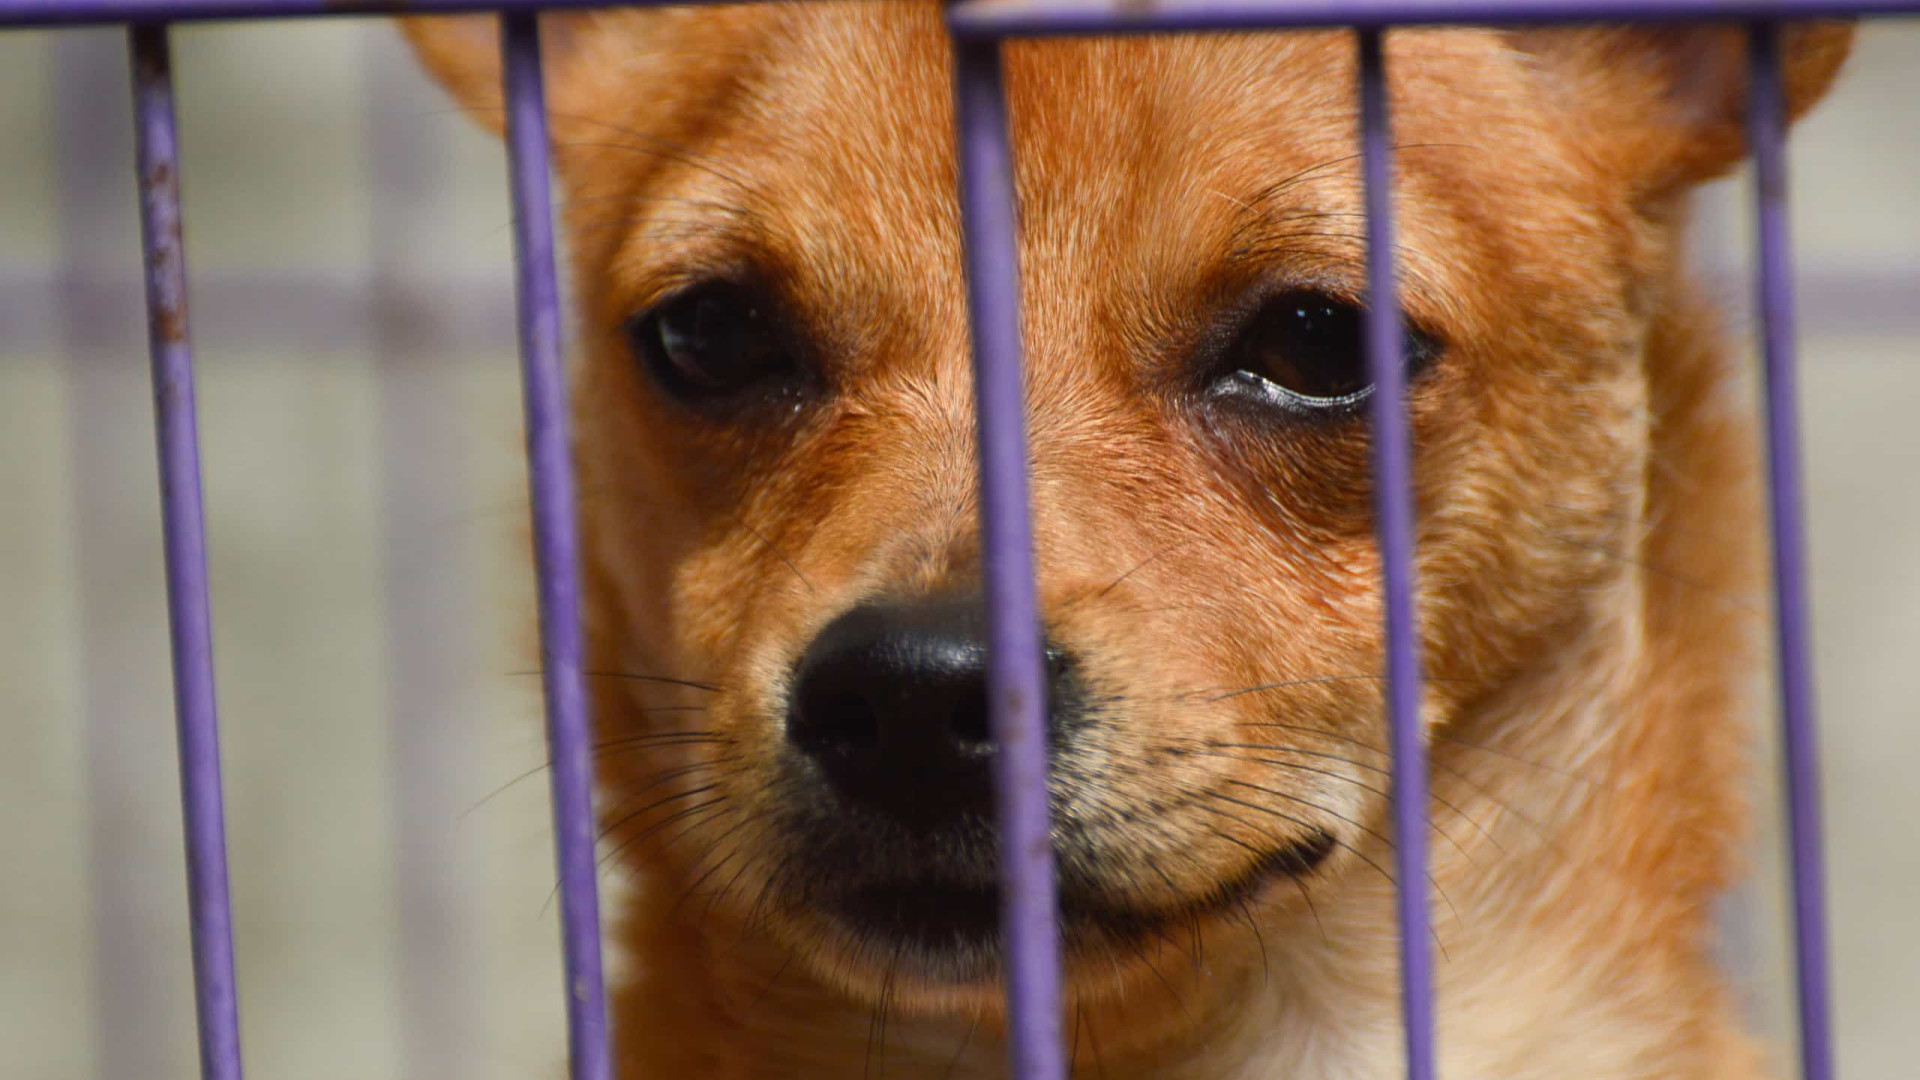 EUA mudam regras para ingresso de cães procedentes do Brasil, diz ministério